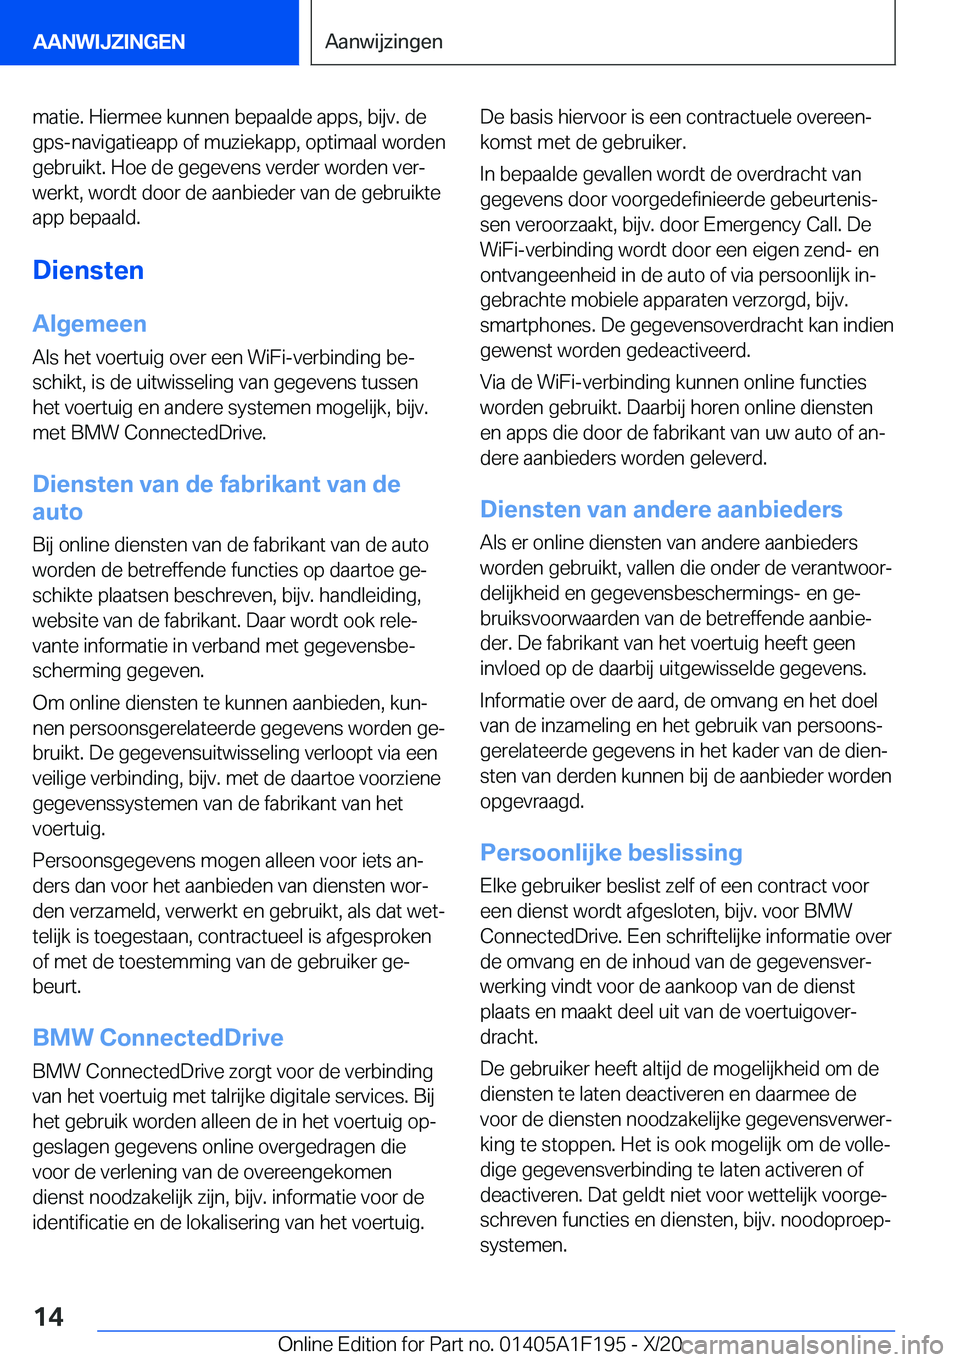 BMW M5 2021  Instructieboekjes (in Dutch) �m�a�t�i�e�.��H�i�e�r�m�e�e��k�u�n�n�e�n��b�e�p�a�a�l�d�e��a�p�p�s�,��b�i�j�v�.��d�e
�g�p�s�-�n�a�v�i�g�a�t�i�e�a�p�p��o�f��m�u�z�i�e�k�a�p�p�,��o�p�t�i�m�a�a�l��w�o�r�d�e�n �g�e�b�r�u�i�k�t